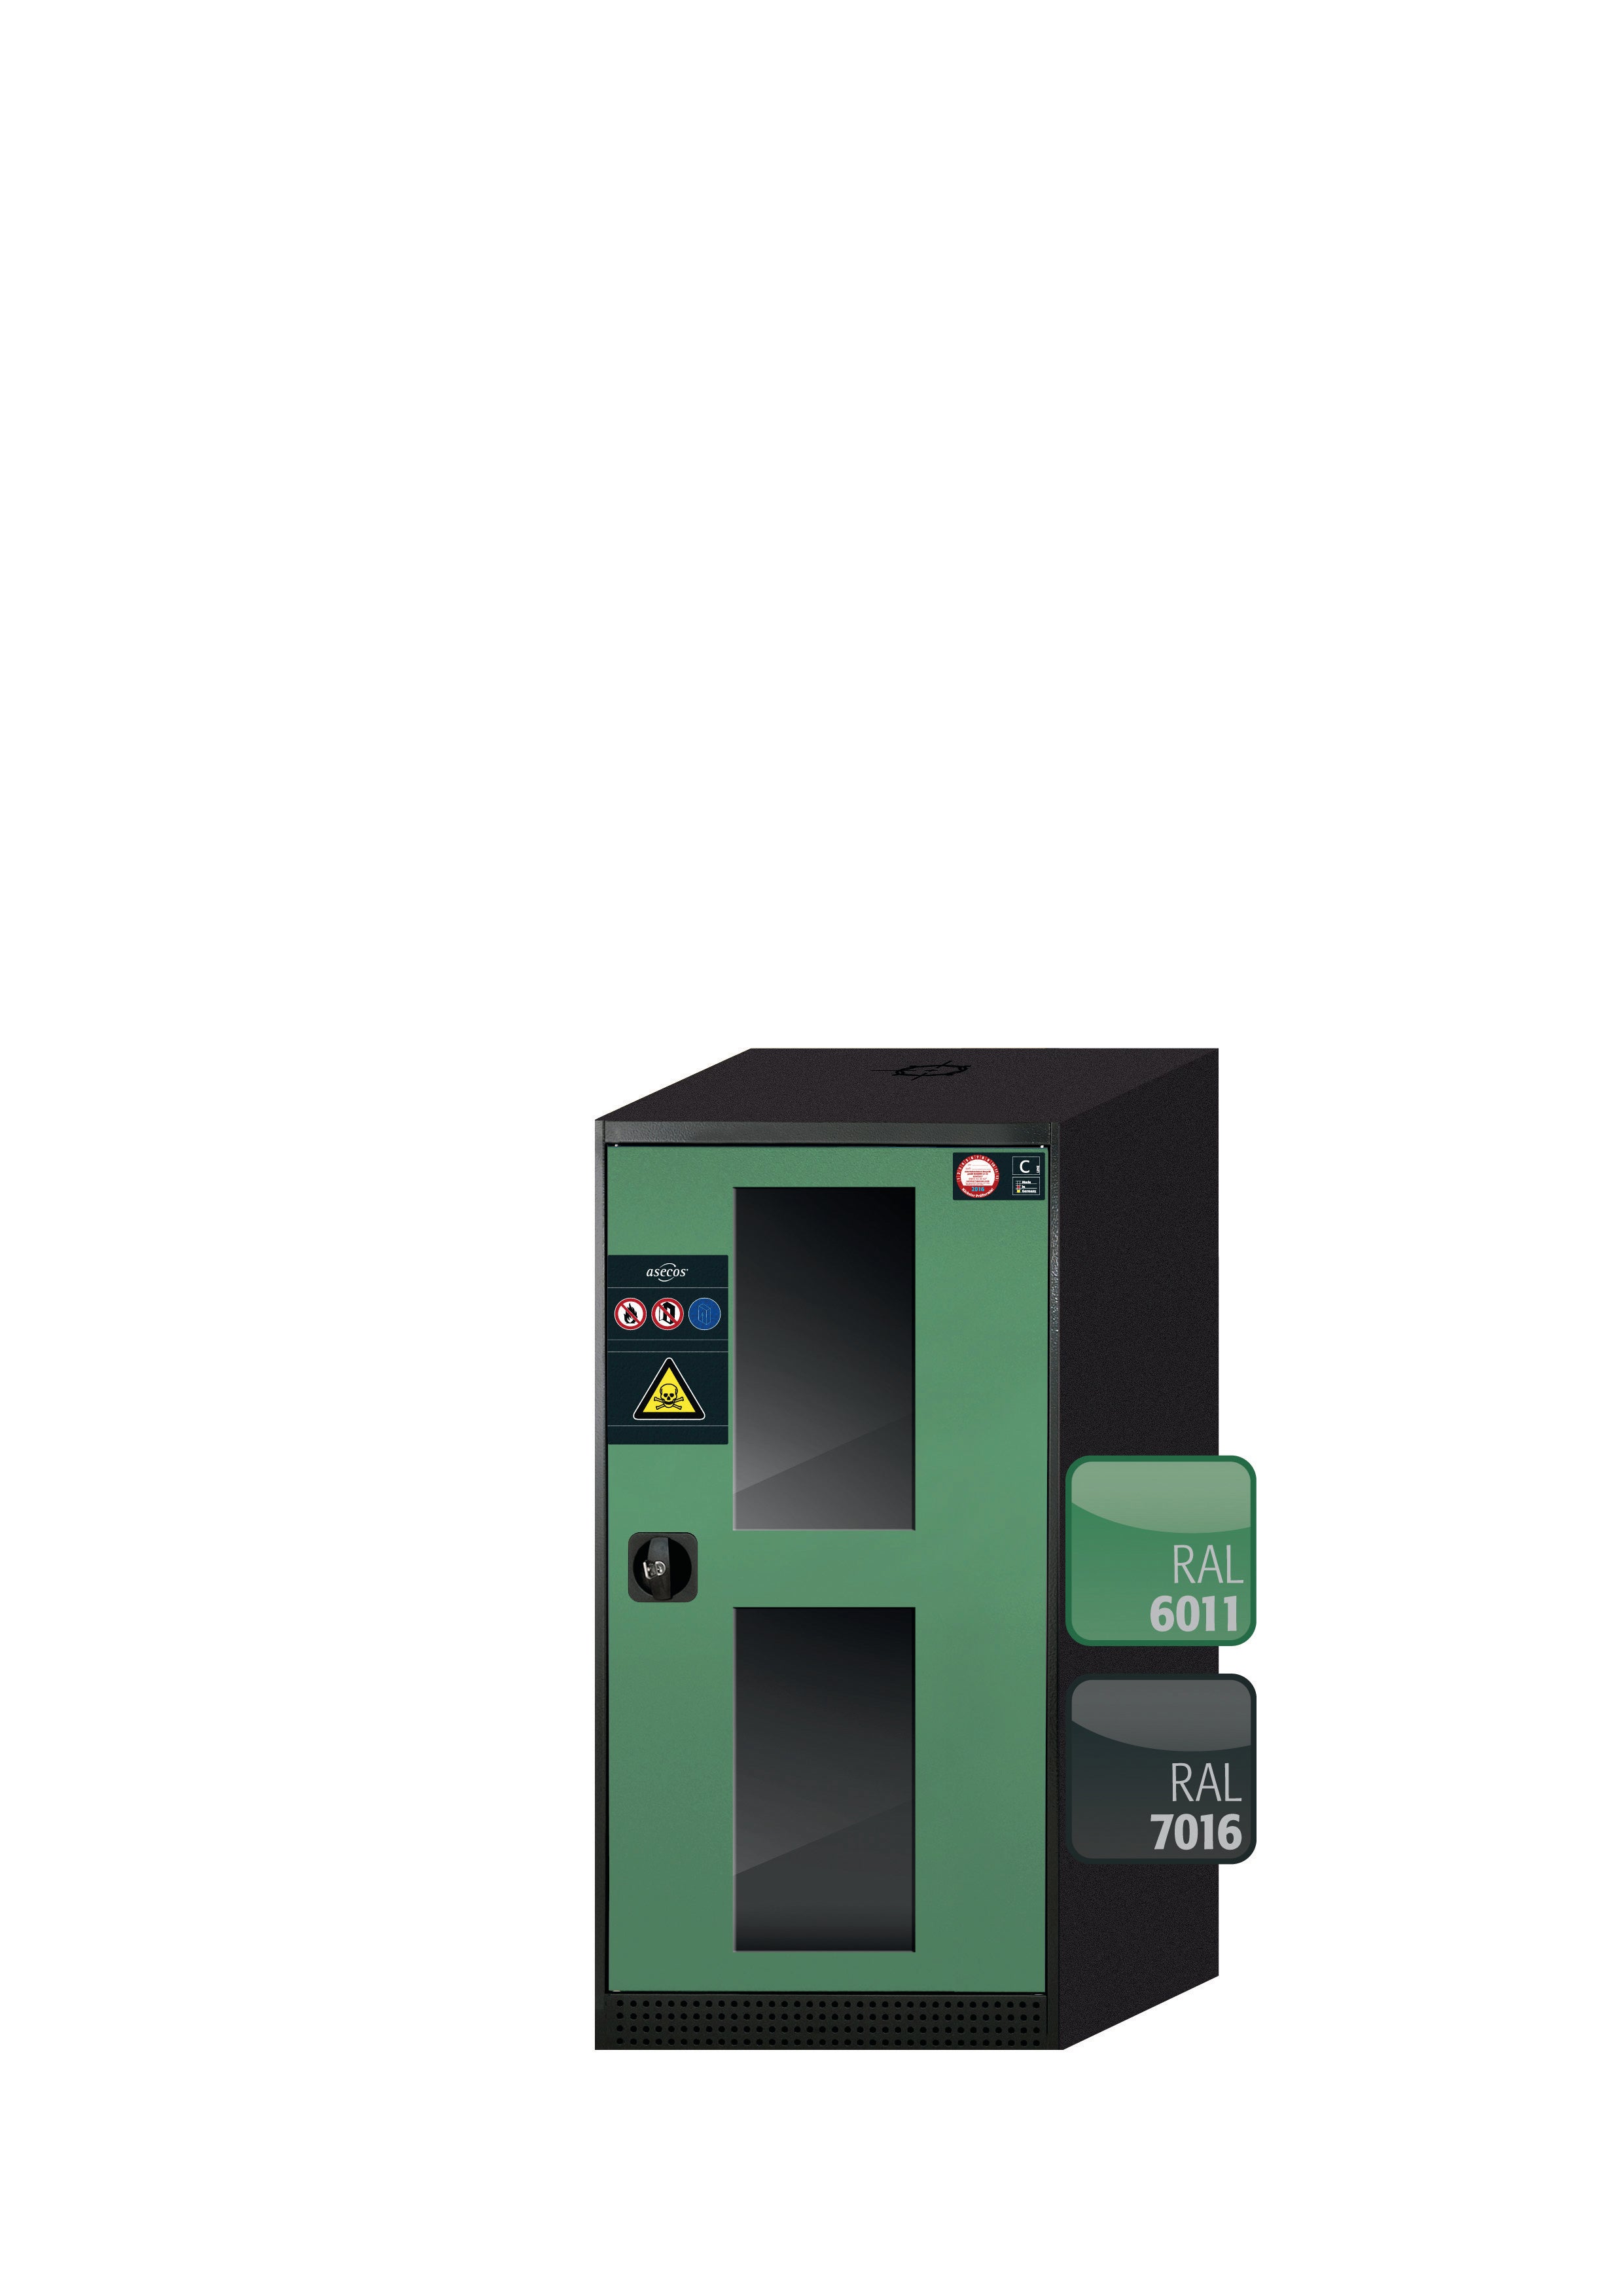 Armoire chimique CS-CLASSIC-G modèle CS.110.054.WDFWR en vert réséda RAL 6011 avec 2x étagères standard (tôle d'acier)